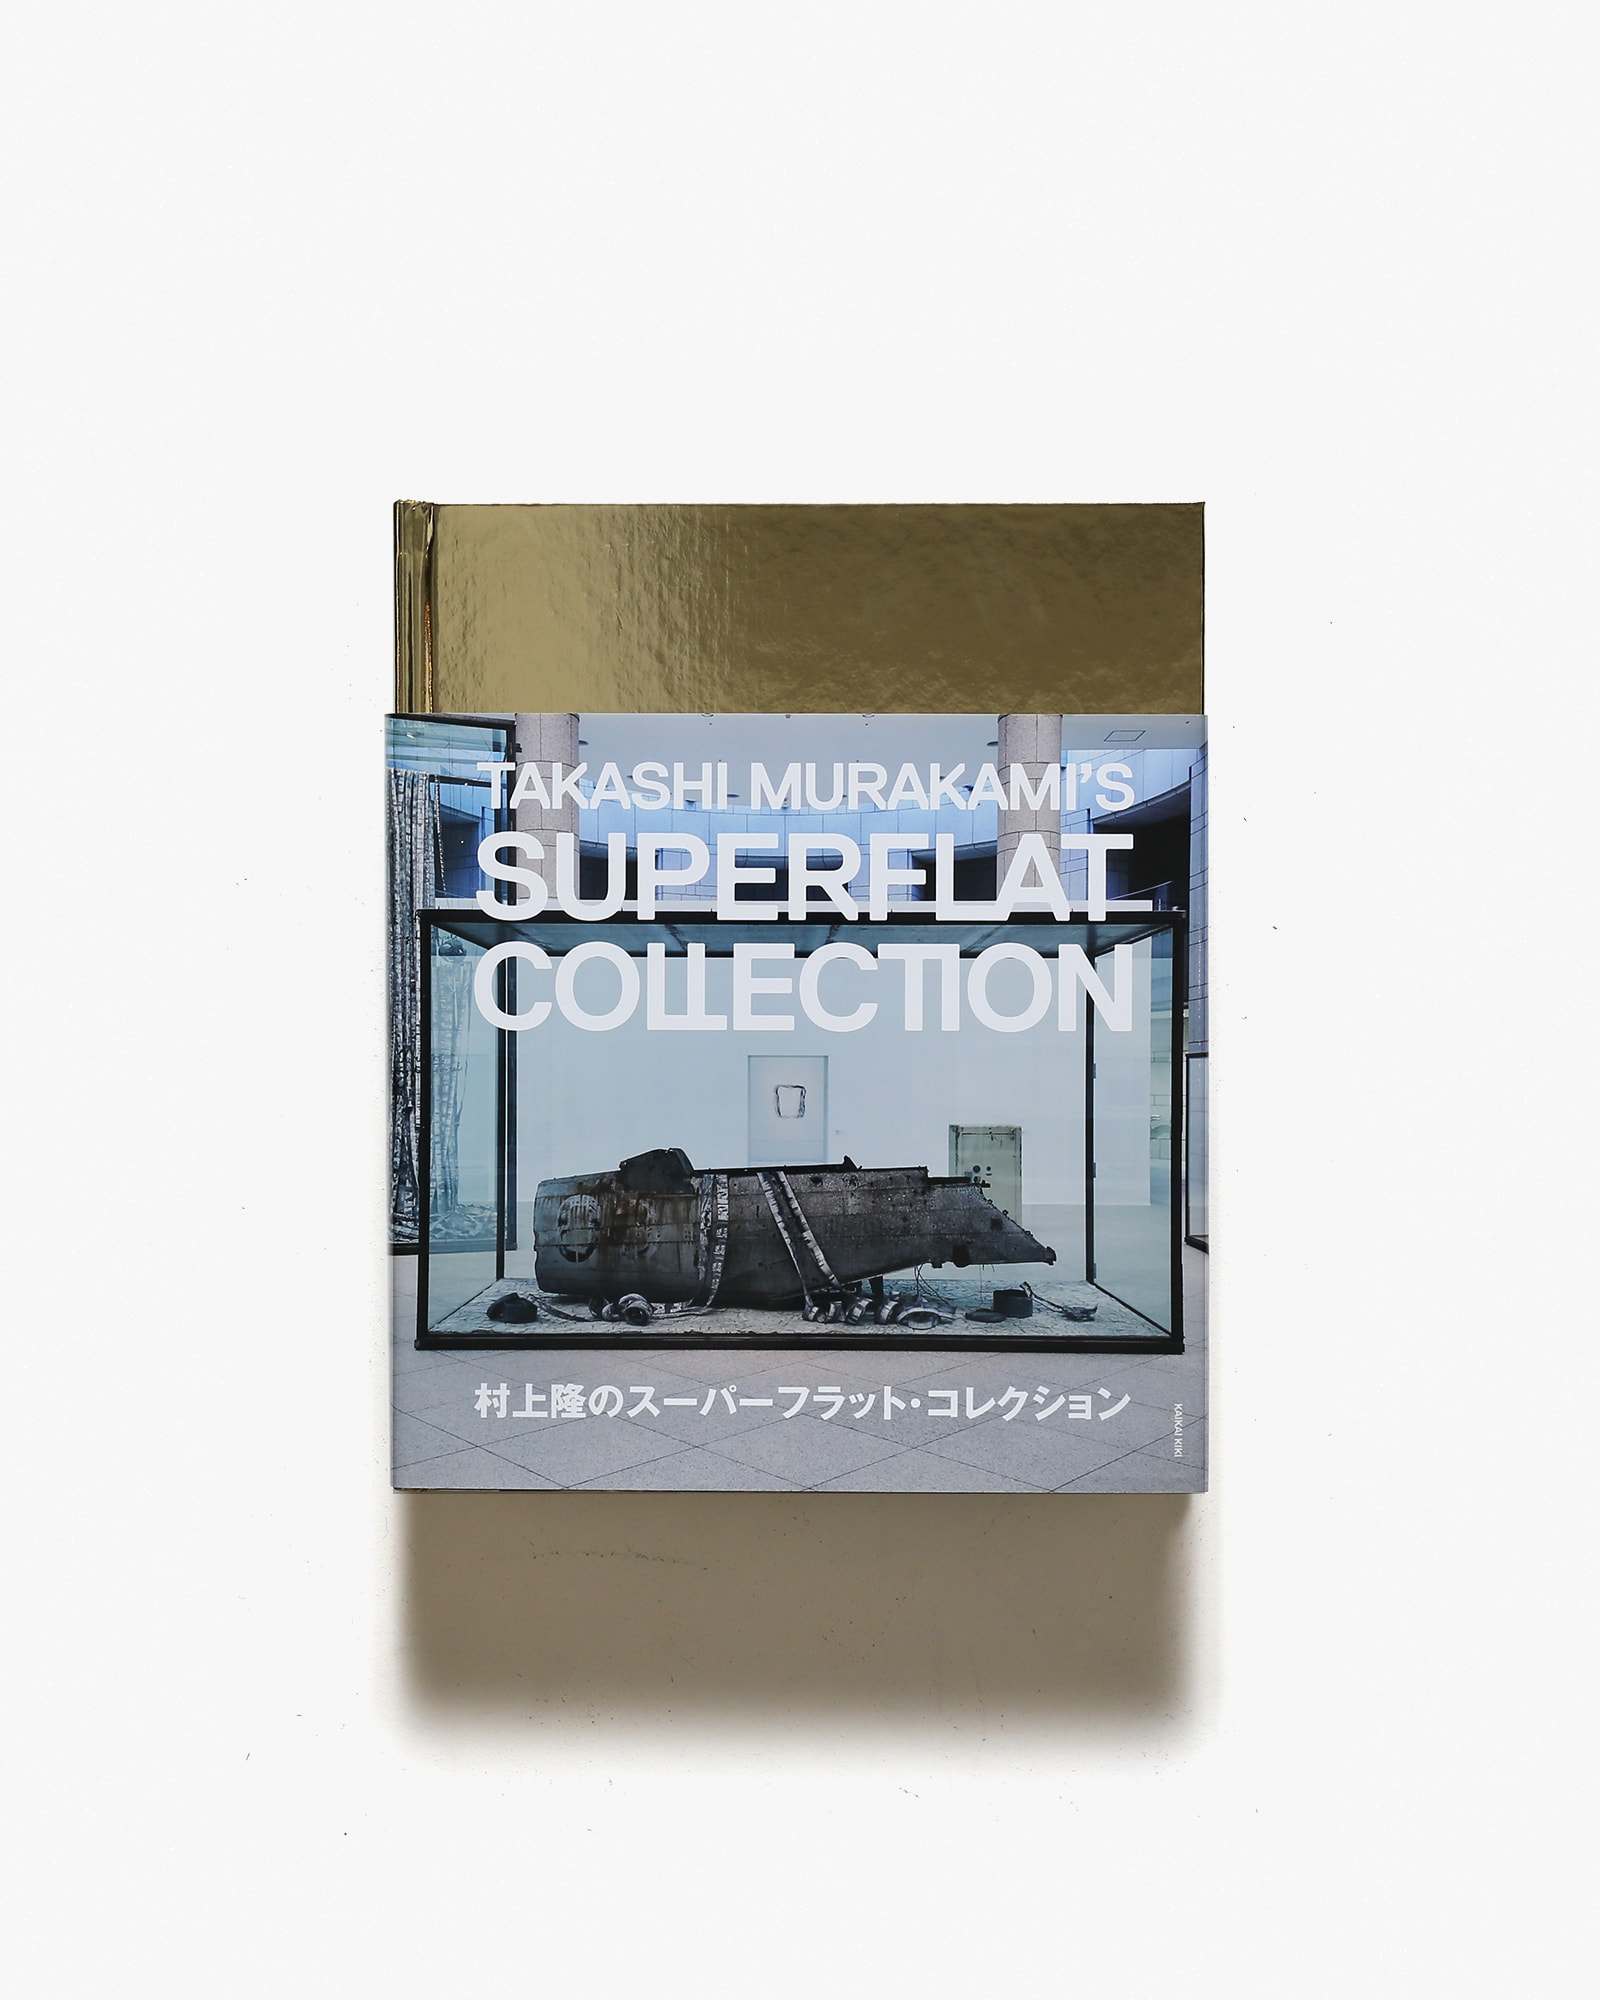 村上隆のスーパーフラット・コレクション